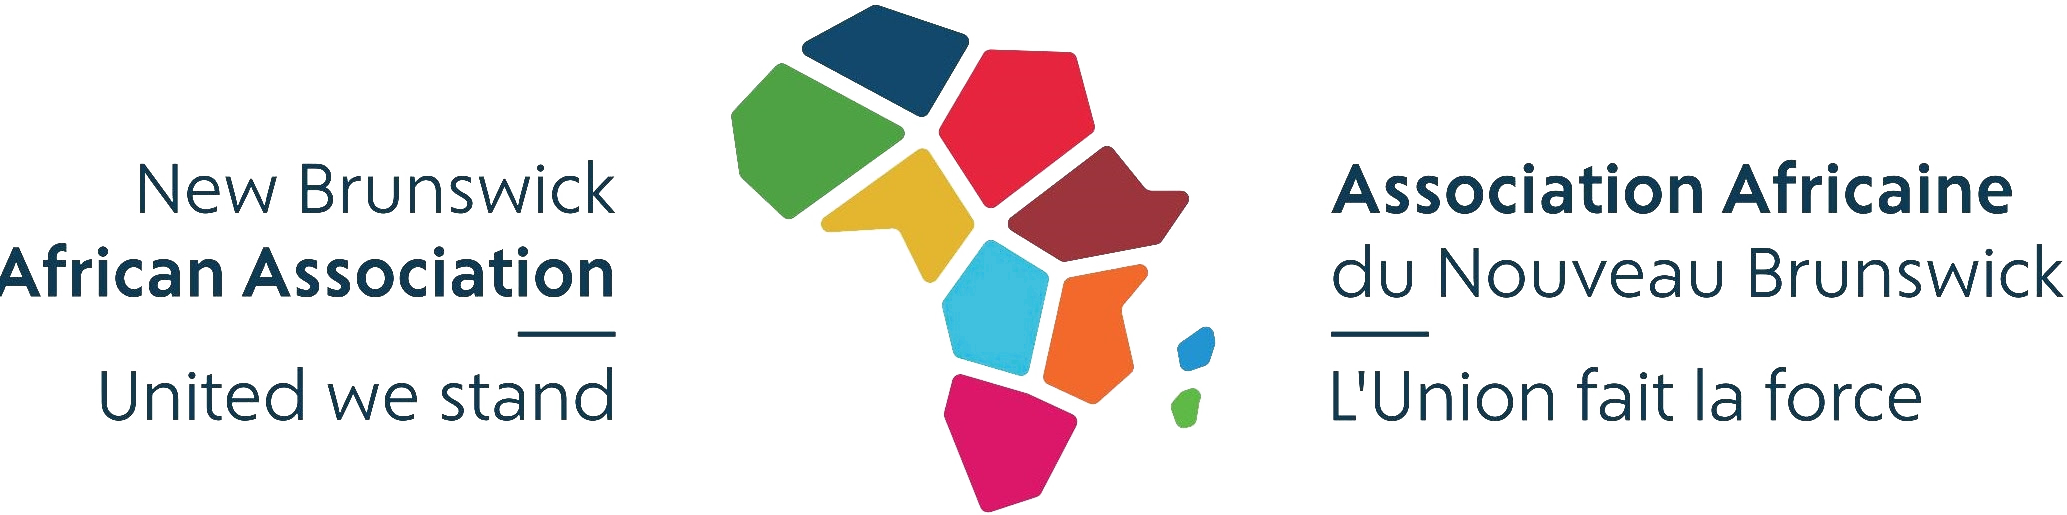 New Brunswick African Association logo